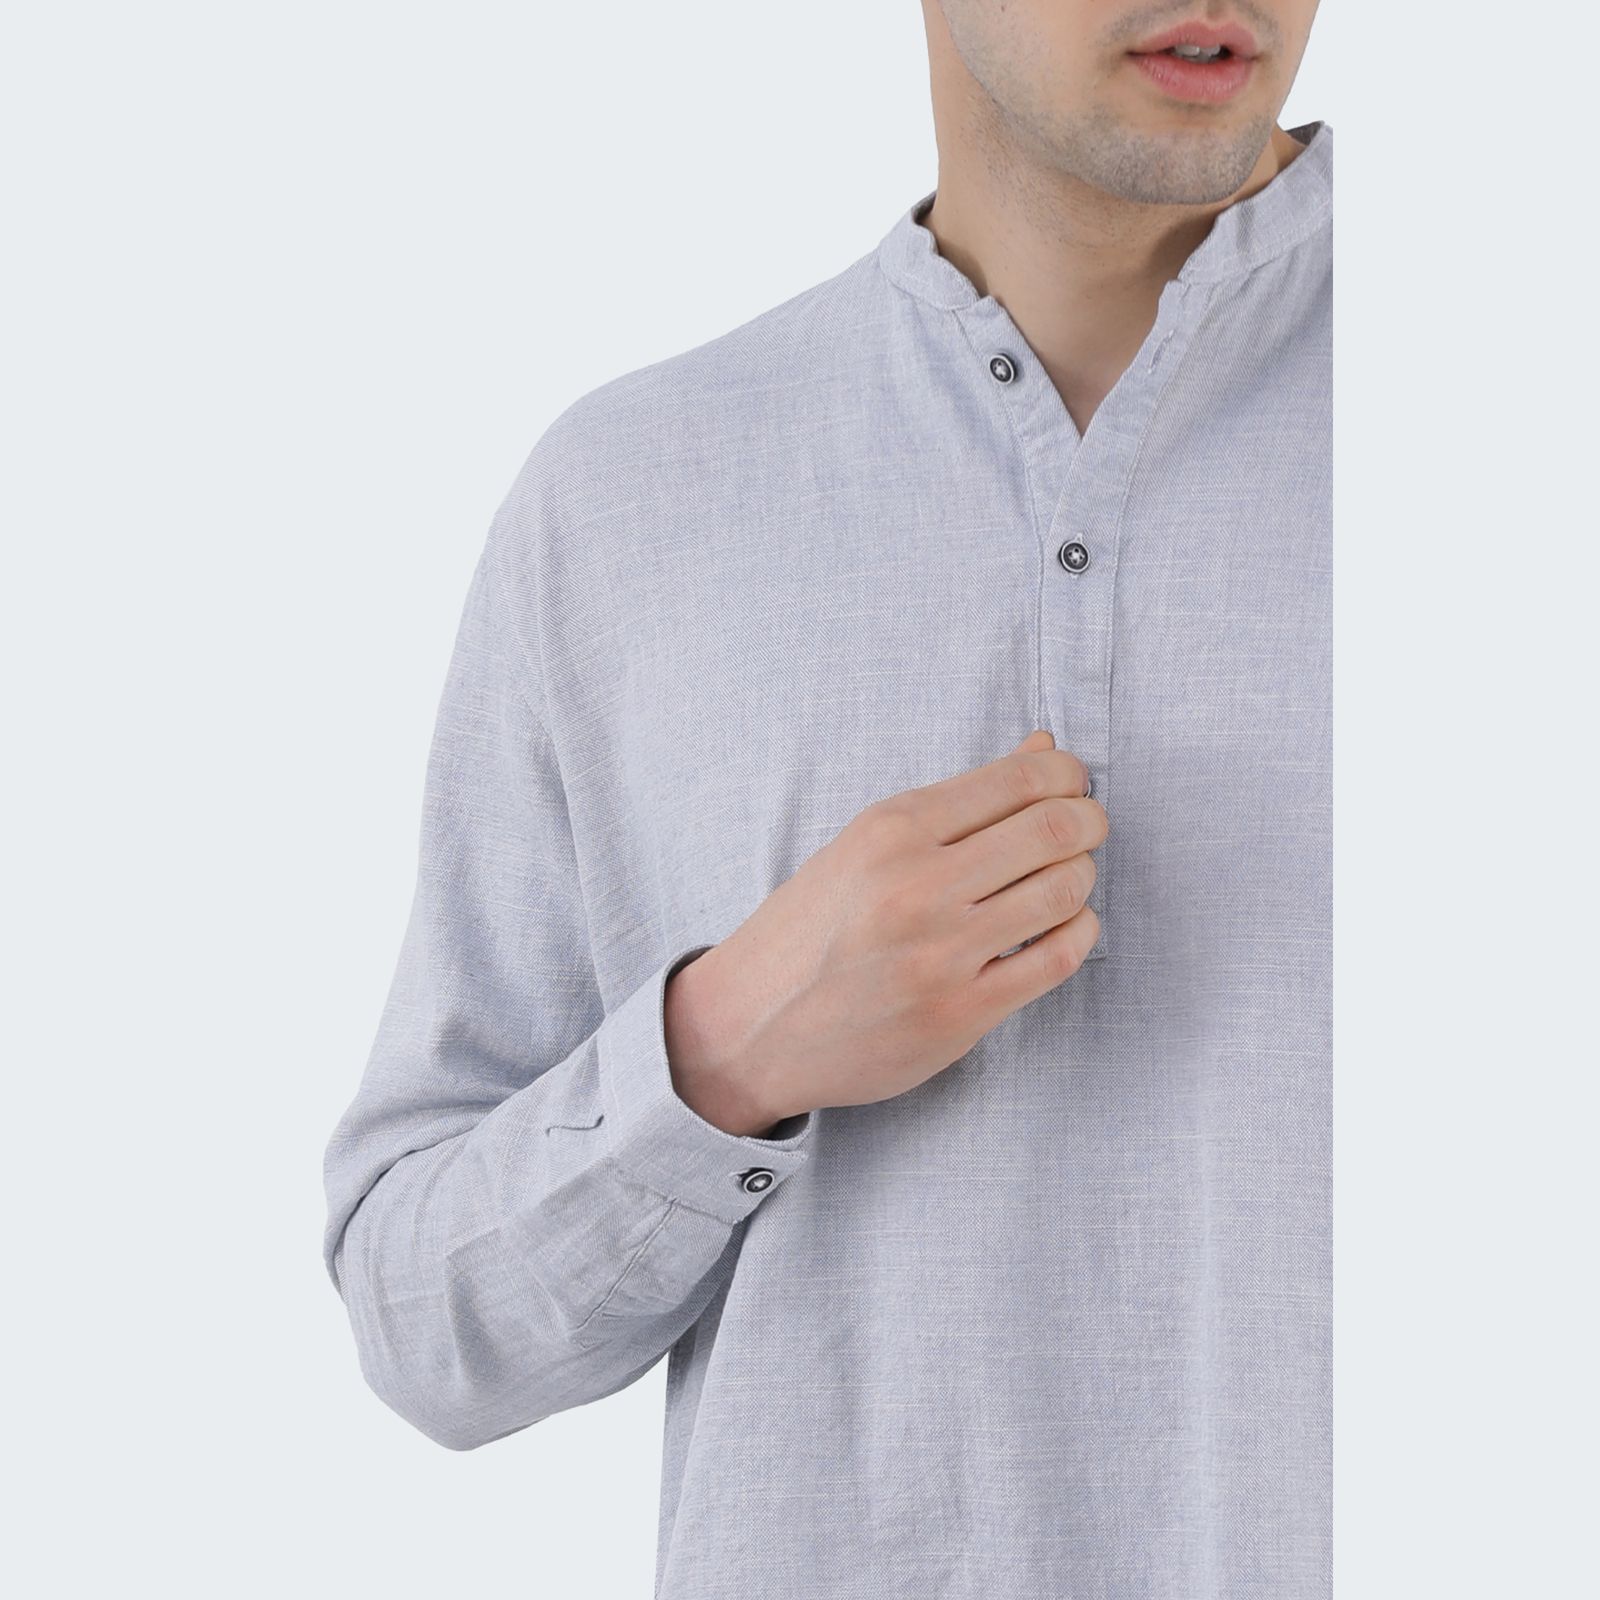 پیراهن آستین بلند مردانه پاتن جامه مدل یقه فرنچ 102721020033297 -  - 5